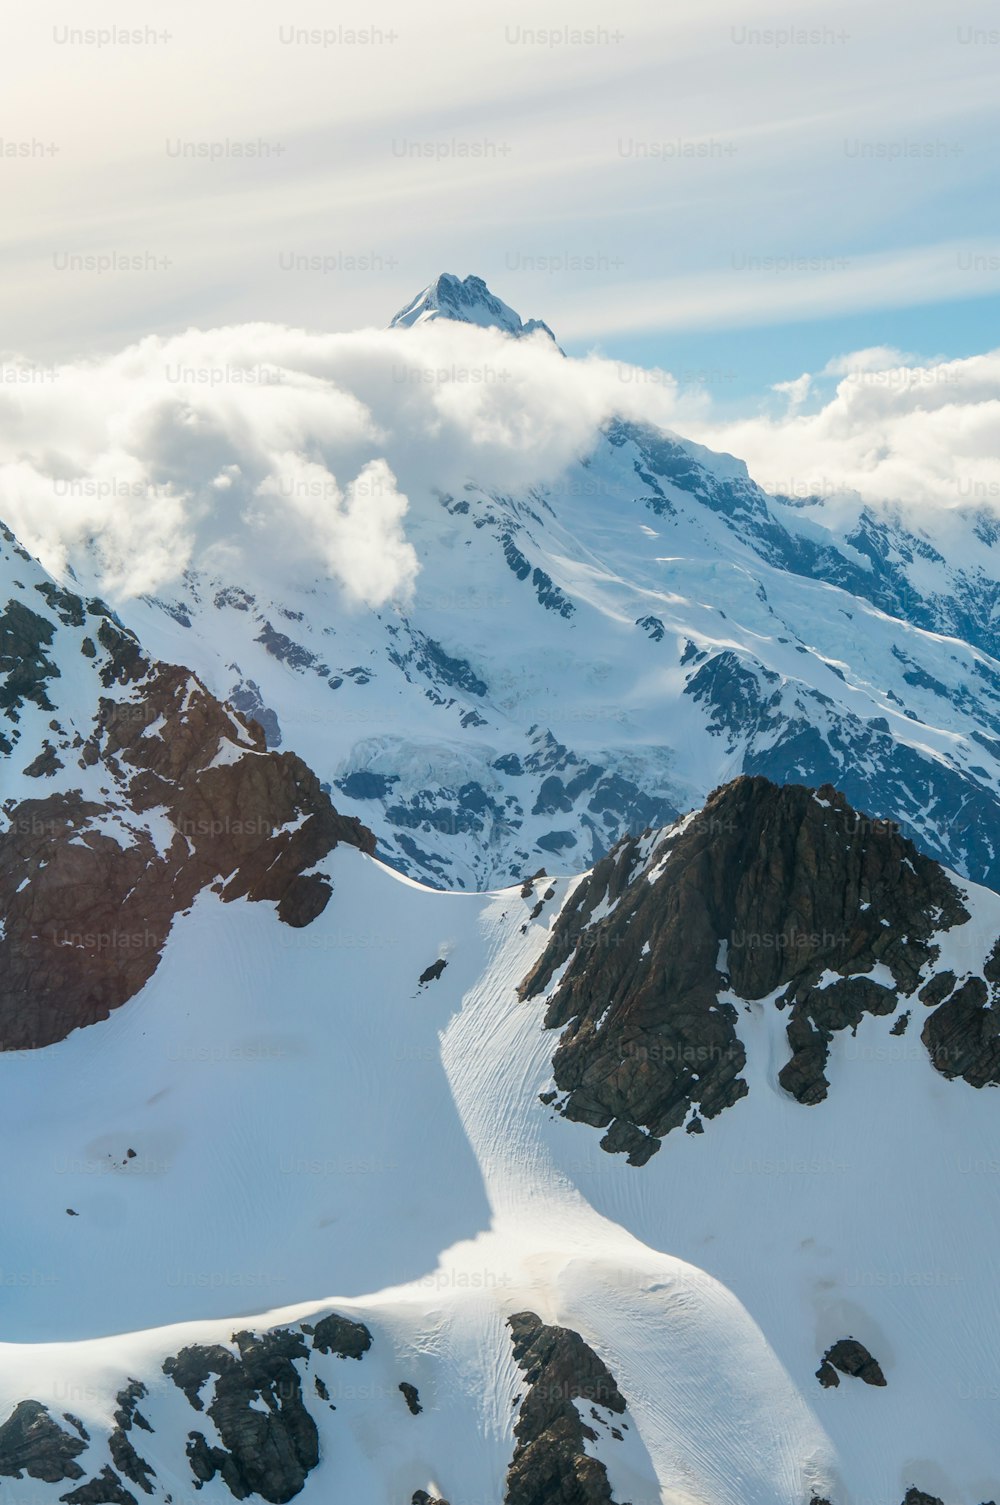 Paisagem de inverno da cordilheira da neve e céu azul. Fundo de cenário para atividades de montanha, como esqui, trekking, esportes de inverno e alpinismo.